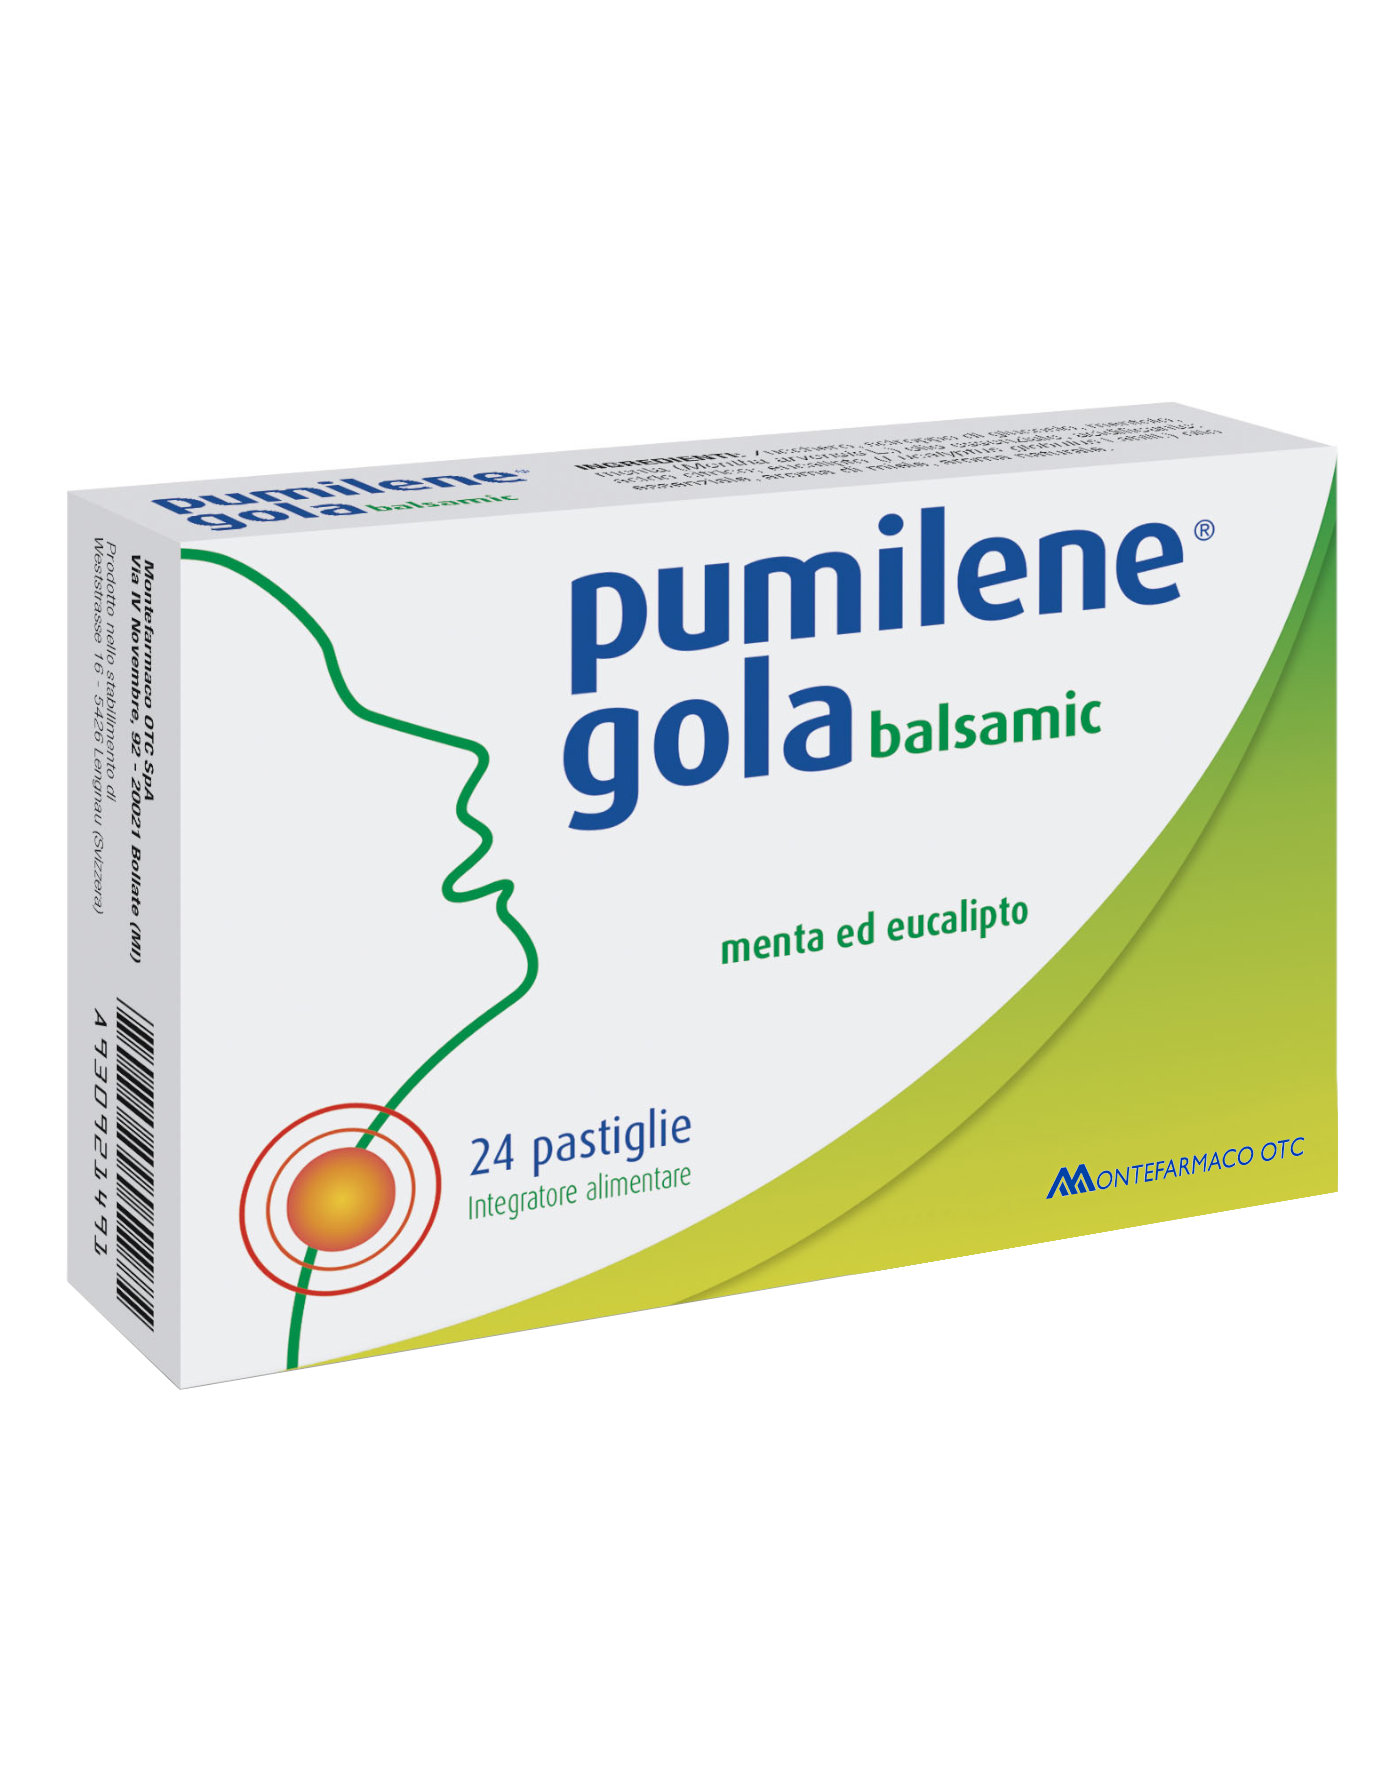 Pumilene Gola Balsamic by Pumilene vapo, 24 tablets 